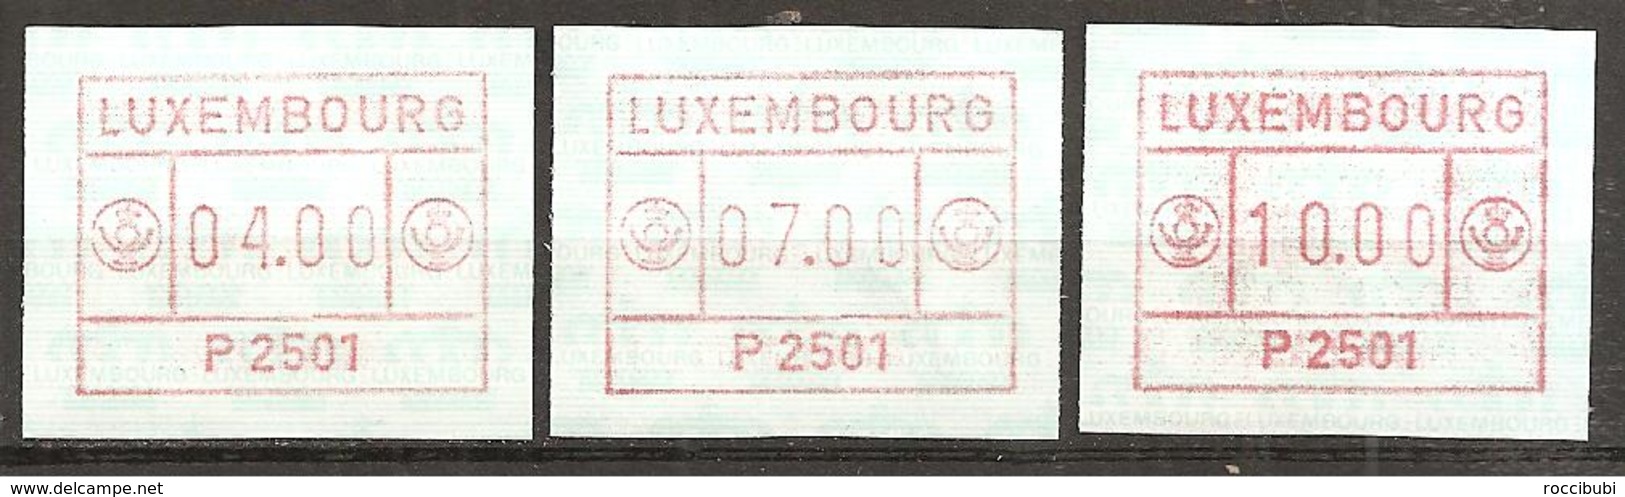 Luxemburg 1983 // Michel ATM 1 ** - Frankeervignetten